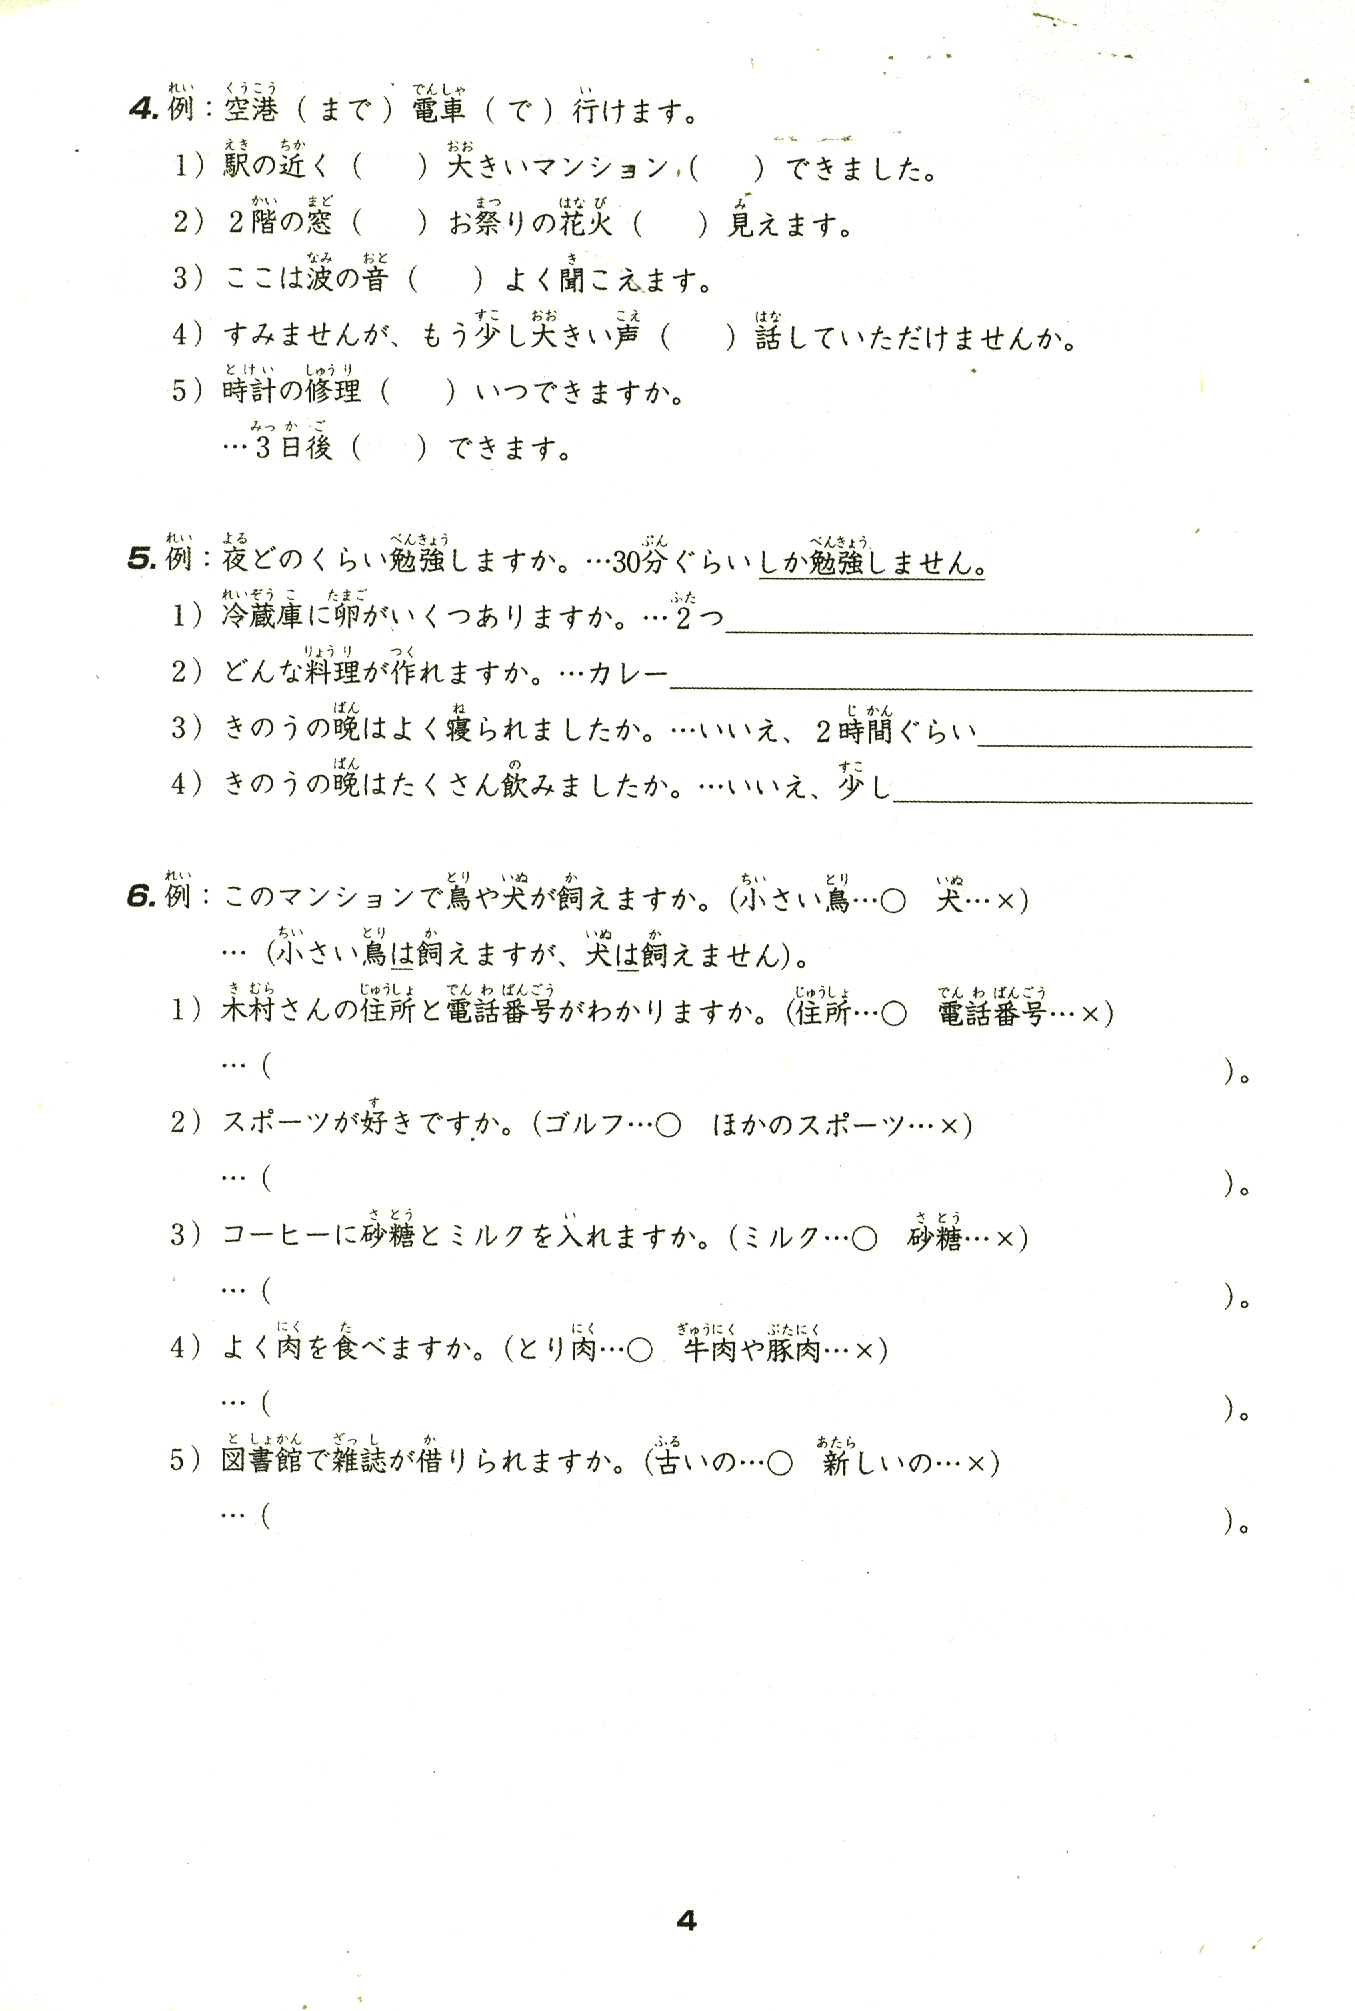 Tiếng Nhật Cho Mọi Người Sơ Cấp 2 - 25 Bài Luyện Nghe PDF